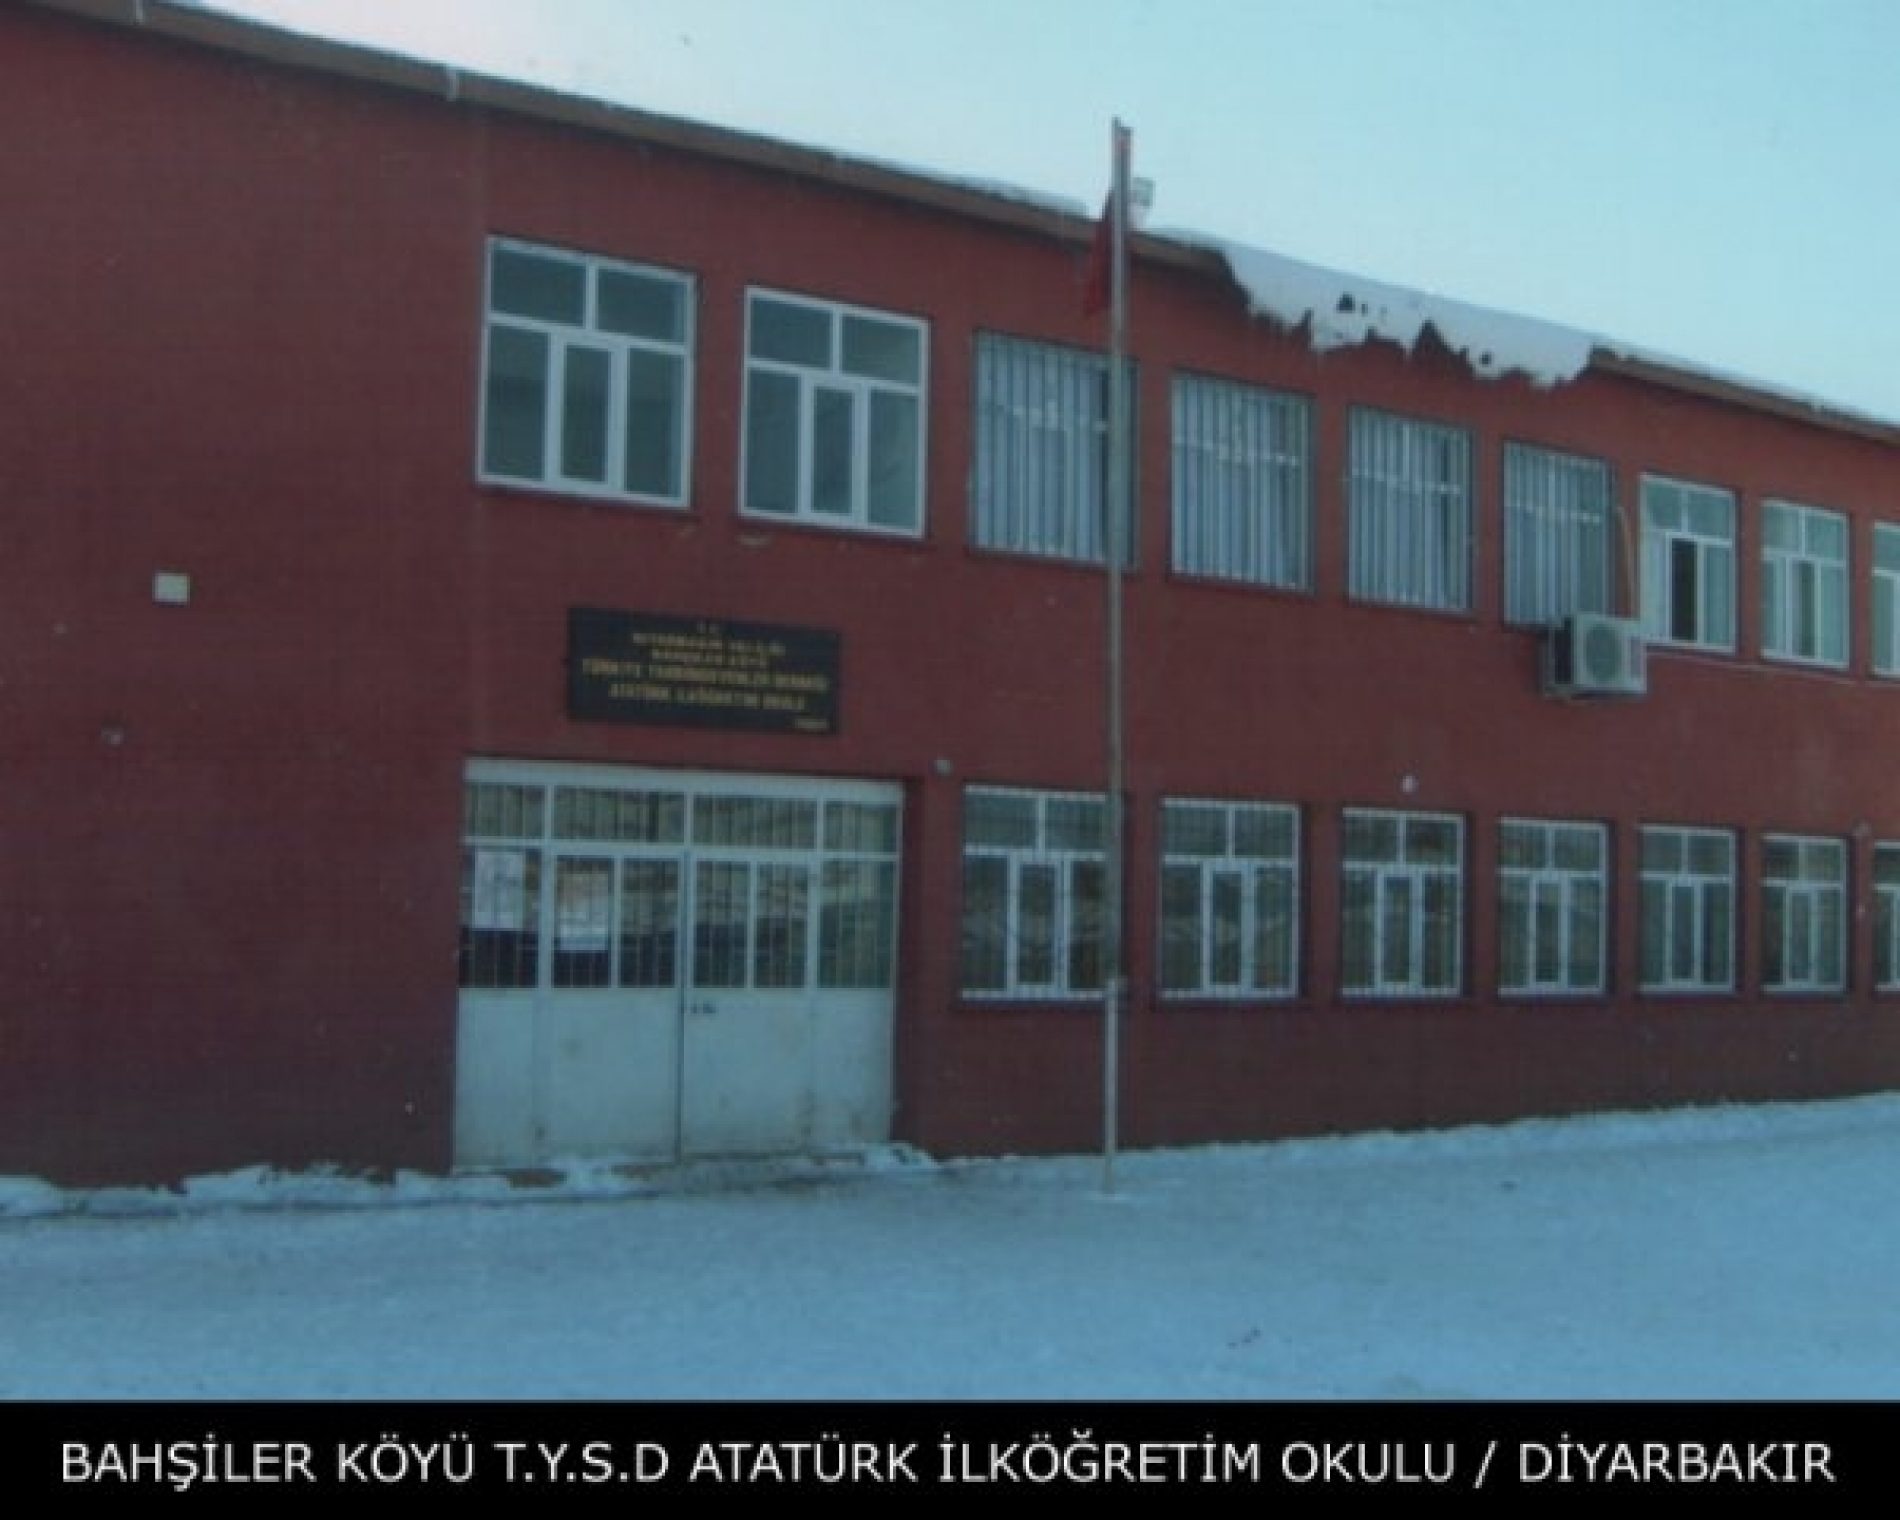 TYSD Bahşiler Köyü Atatürk İlköğretim Okulu